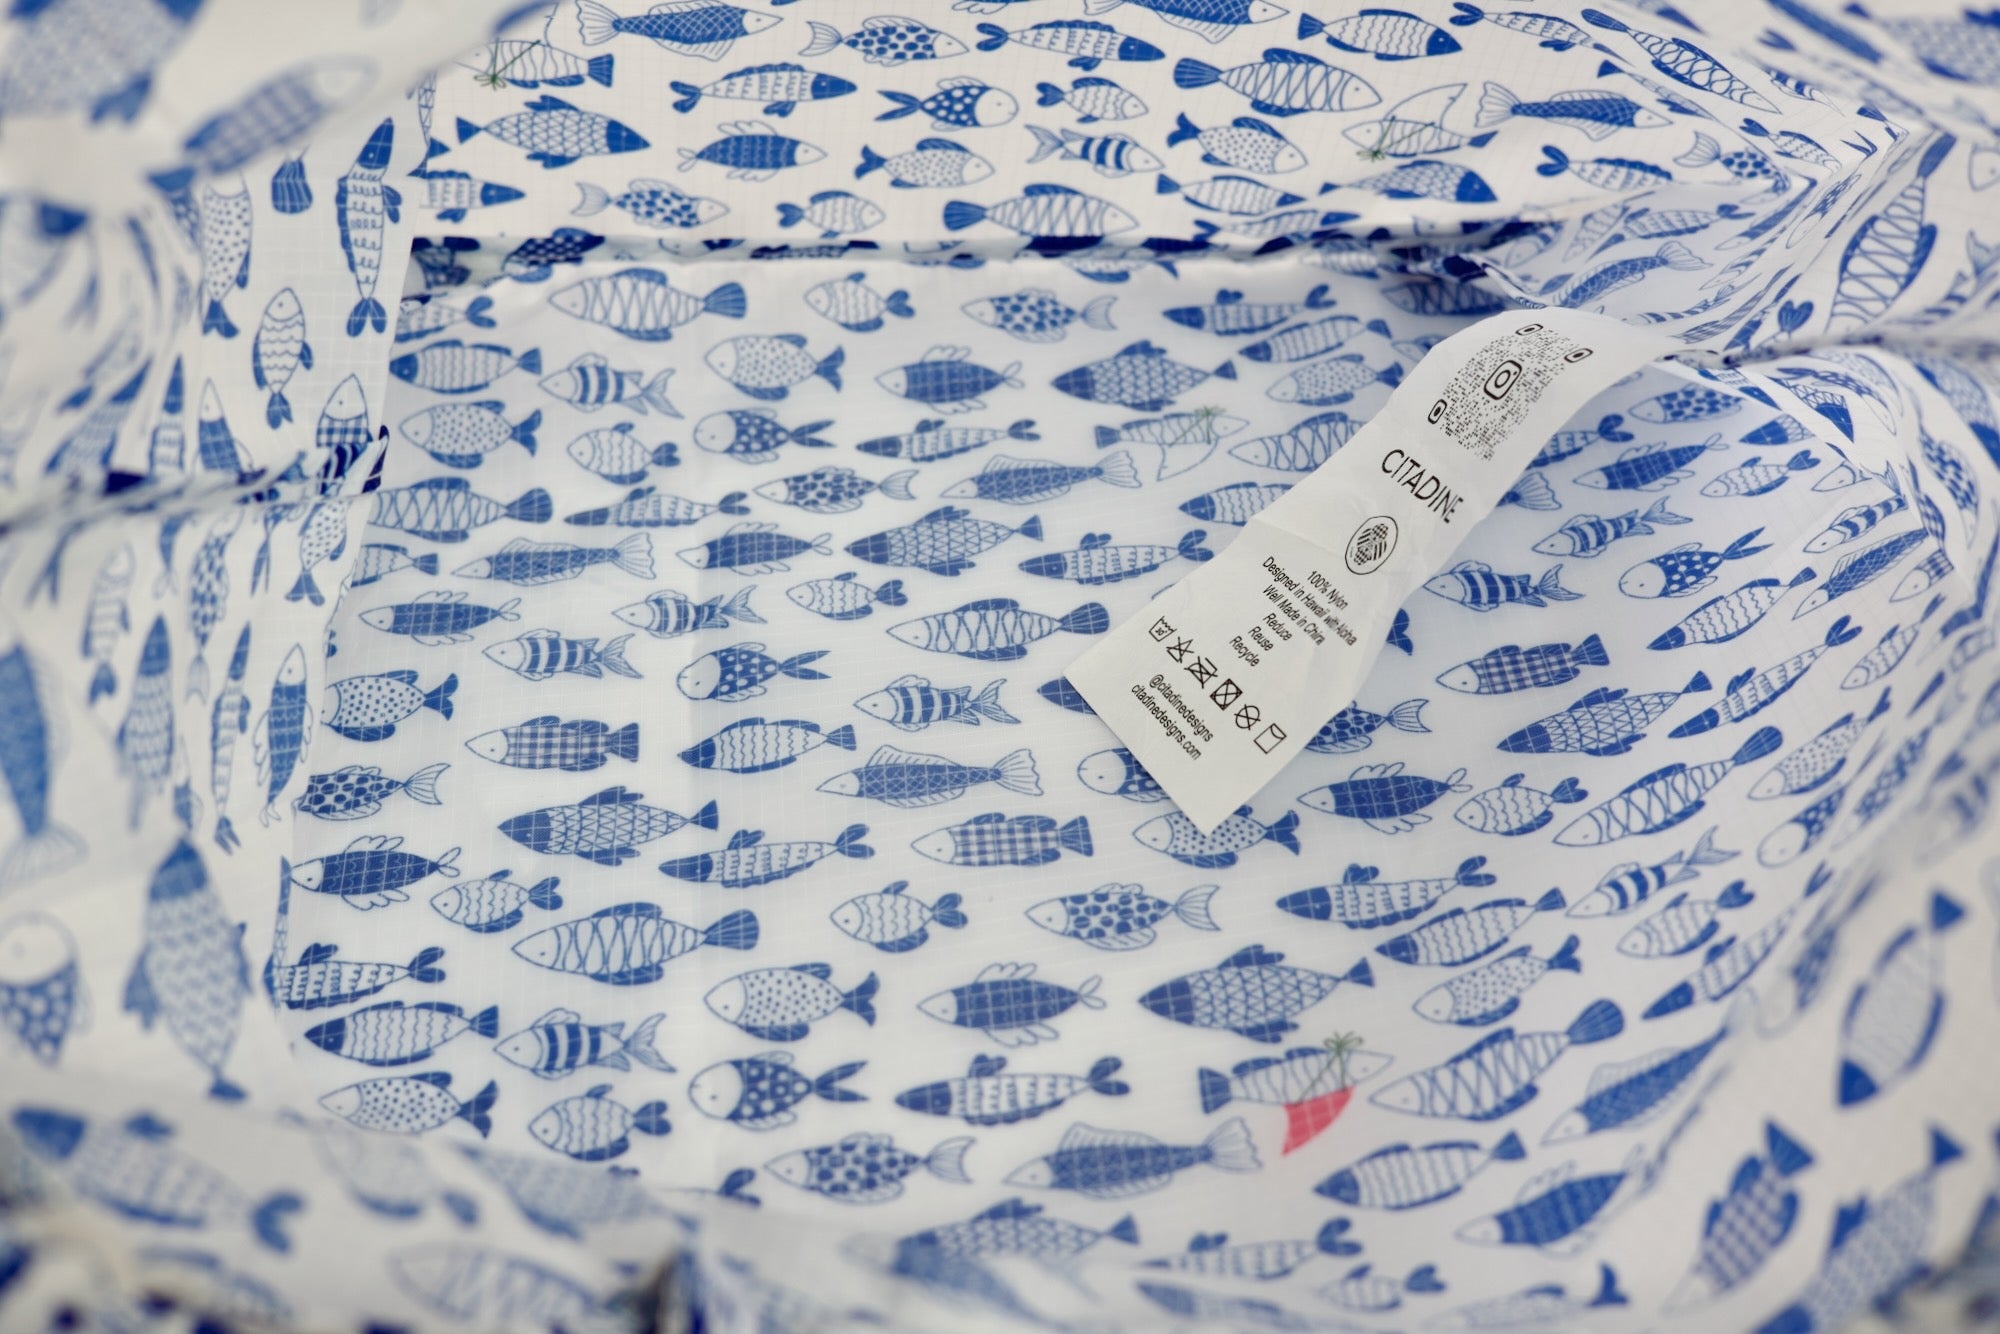 Medium Lei Bag Shark Fin Fish